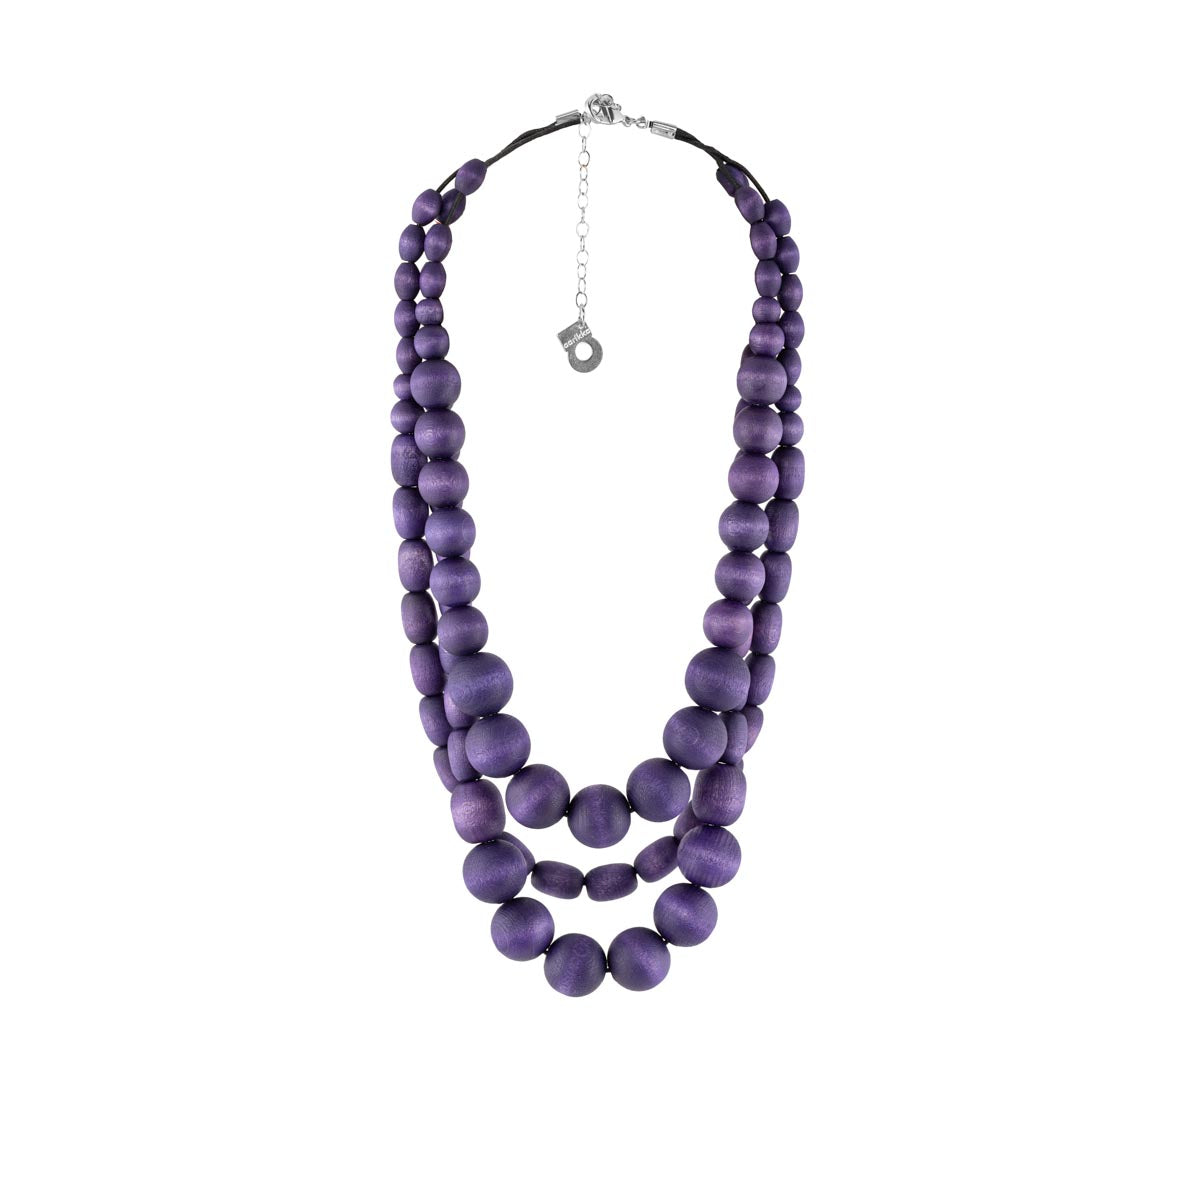 Veronica necklace, purple